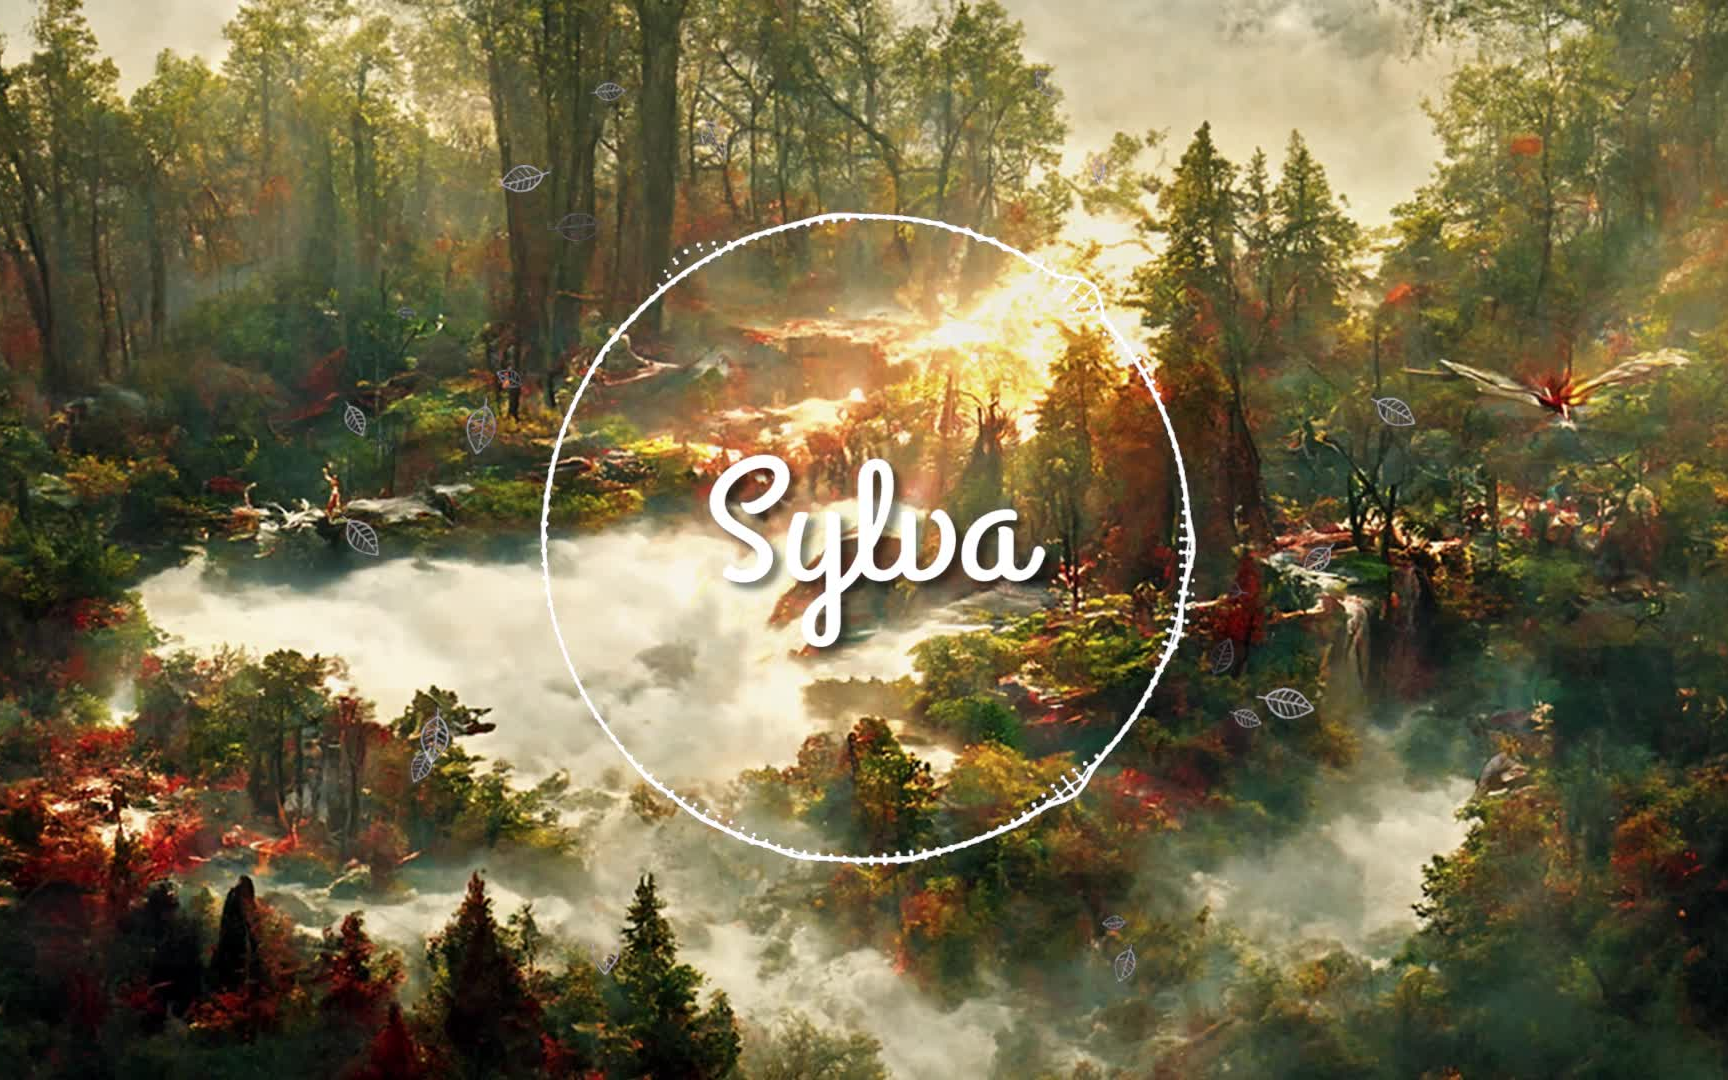 原创音乐《Sylva》| 造语 | 精灵 | 奇幻 | 森林 | 轻管弦 | 抑燃